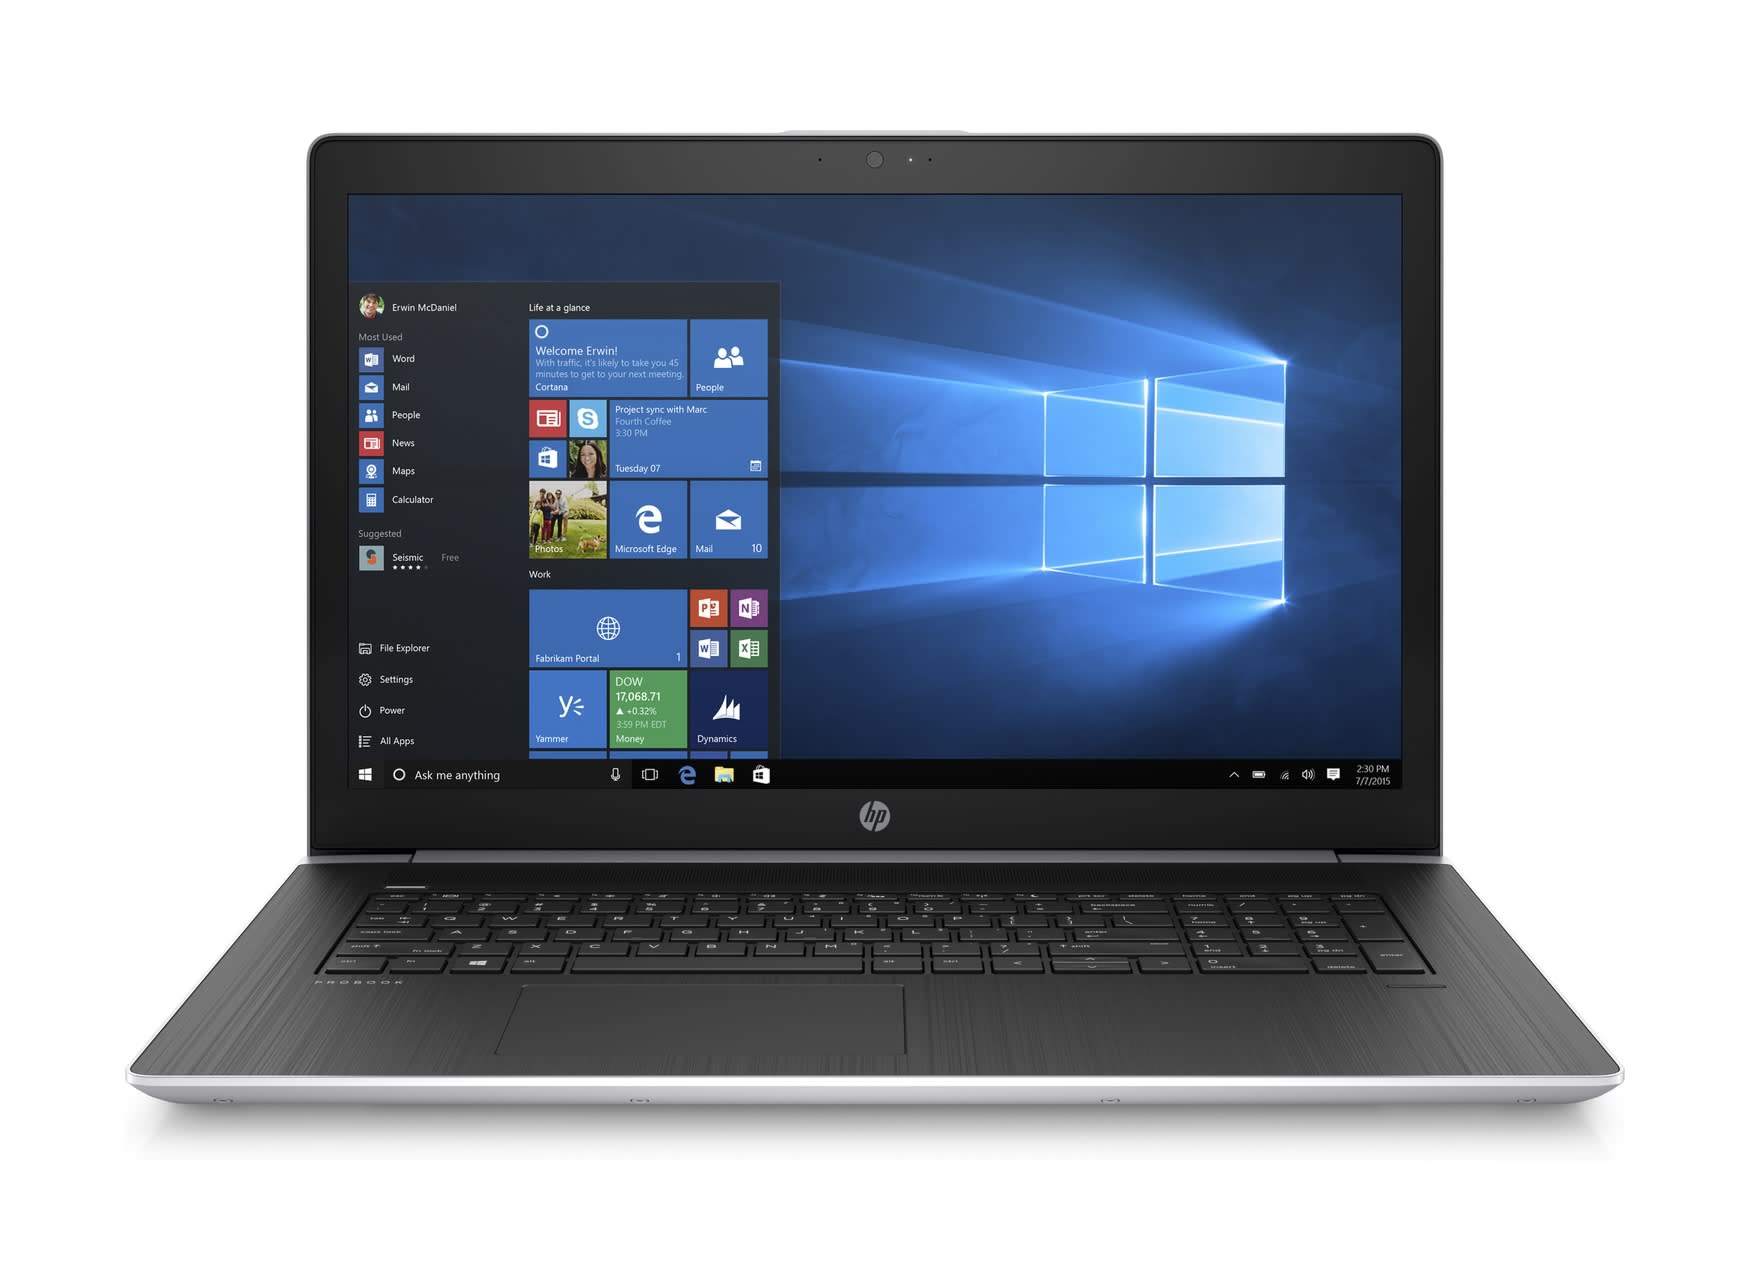 HP ProBook 470 G5 i5-8250U 17.3" kannettava tietokone | Karkkainen.com